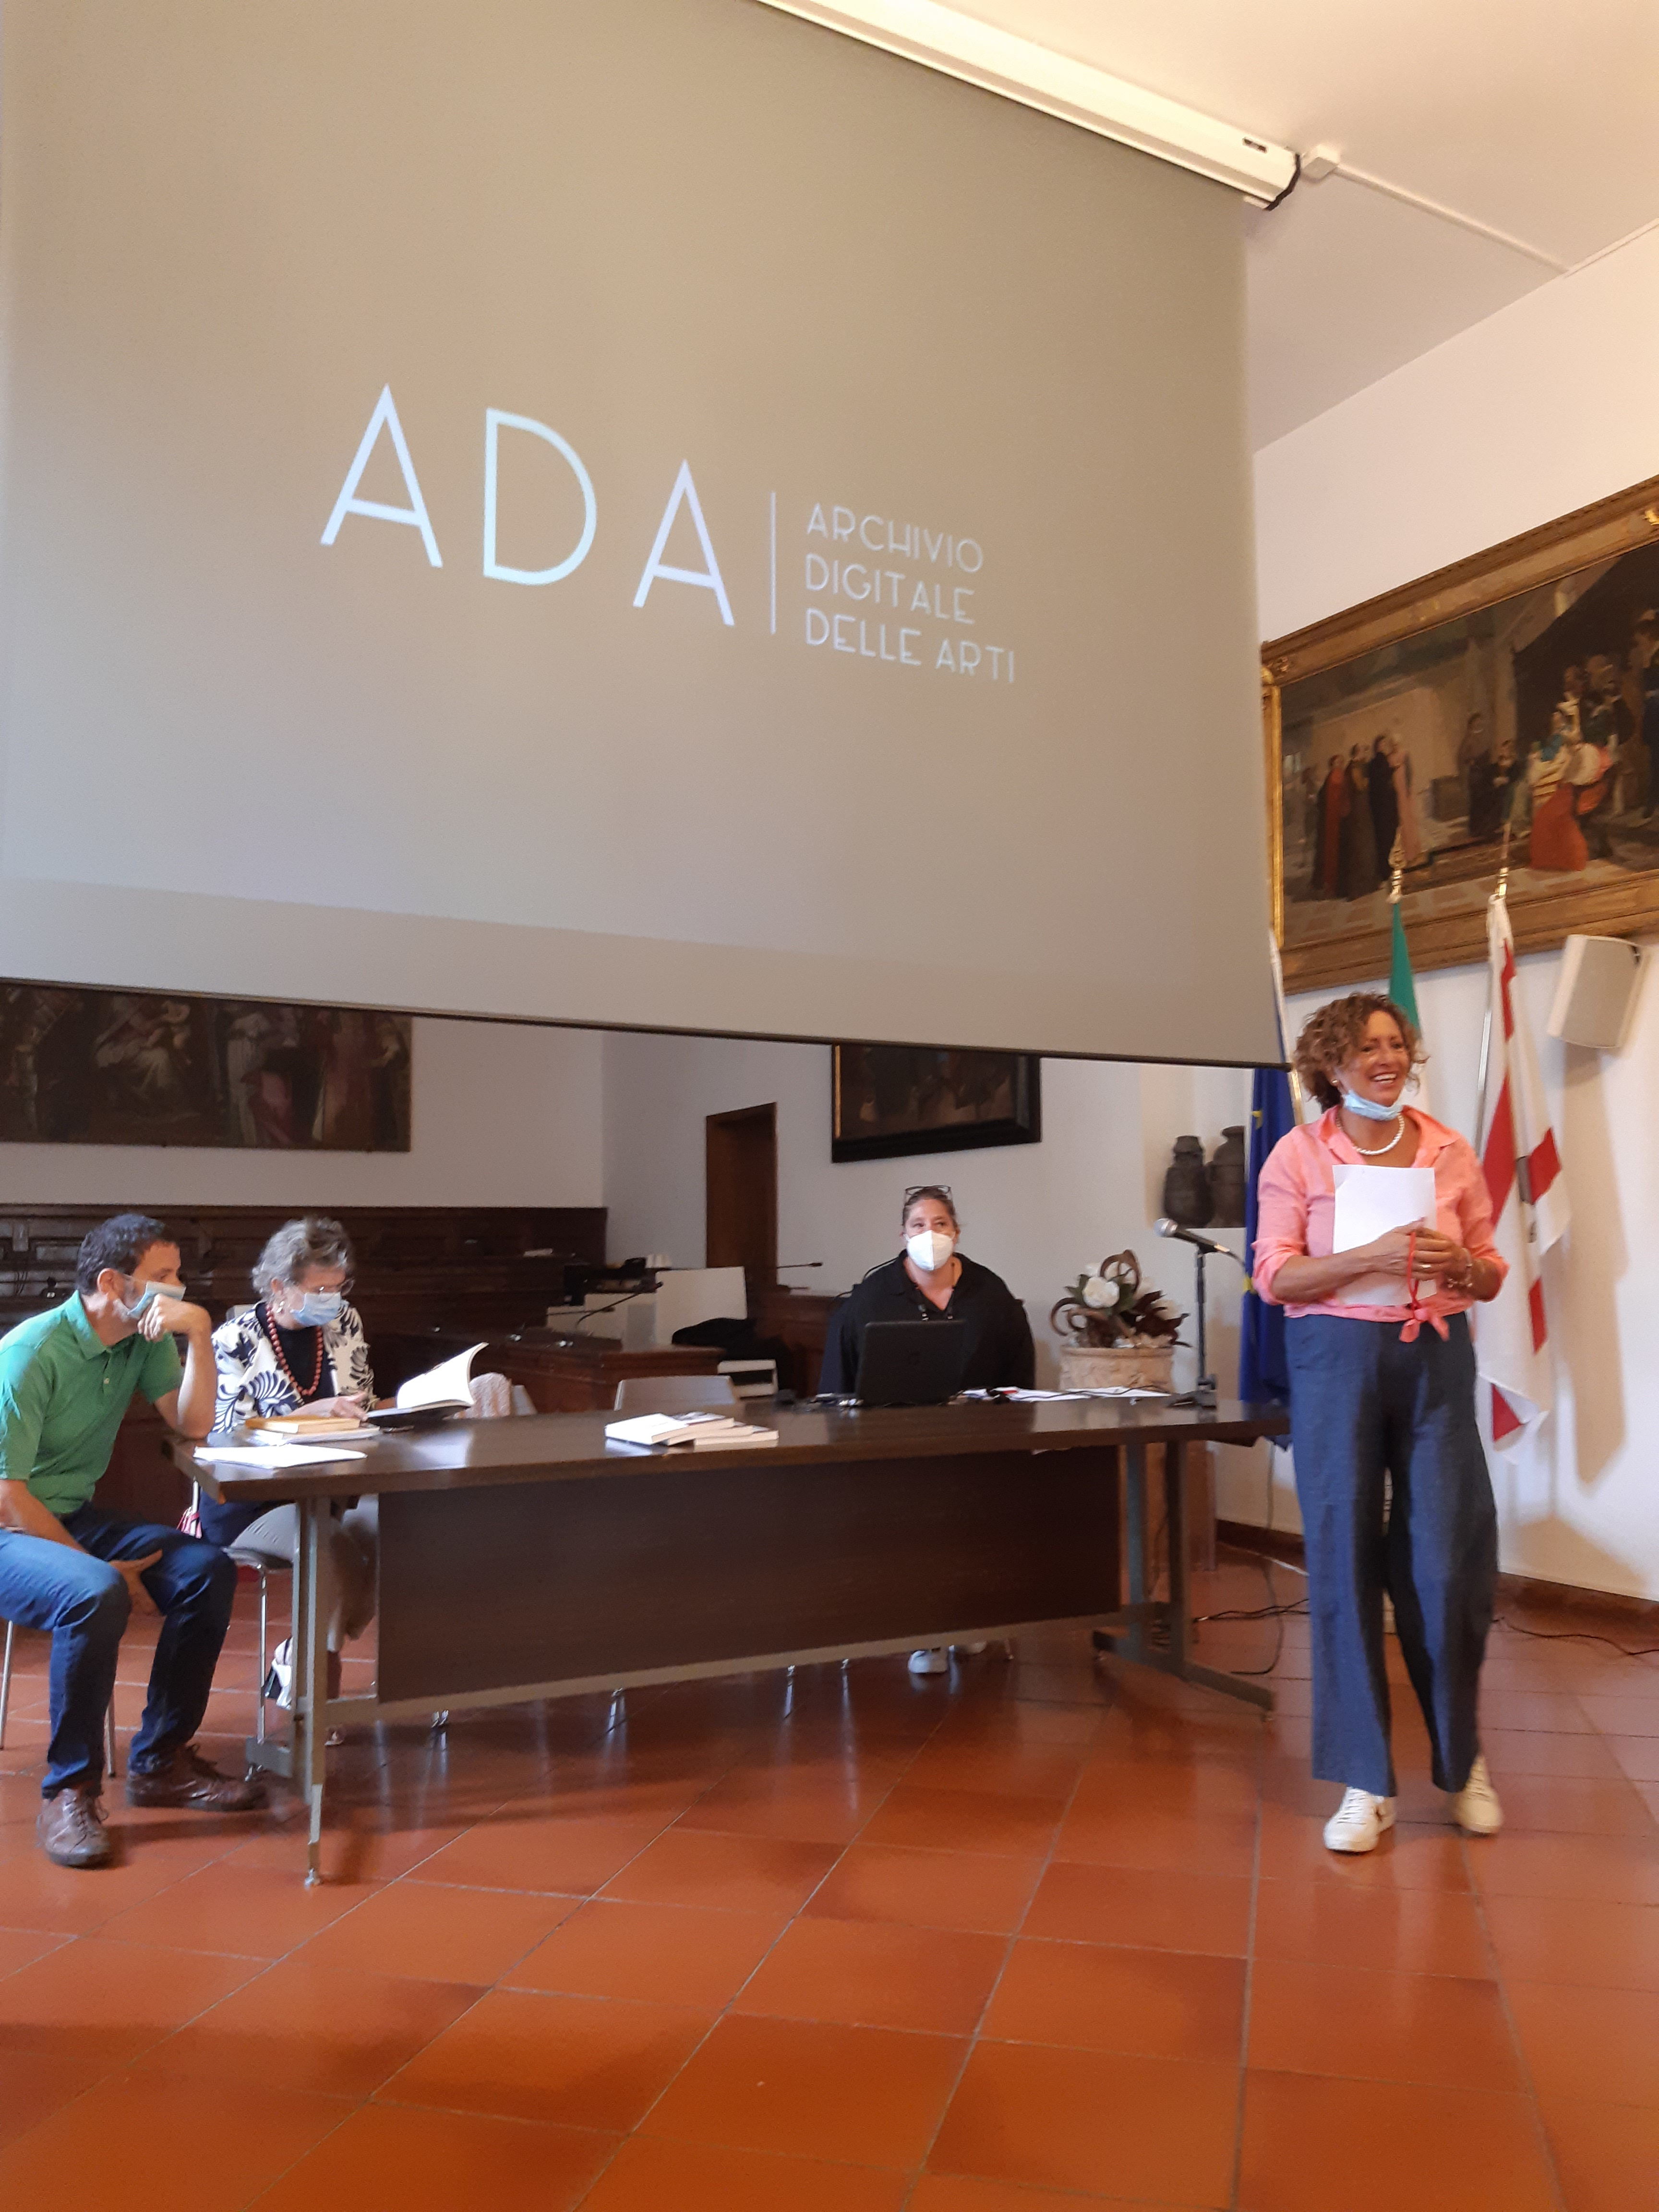 Nasce Ada, l’Archivio Digitale delle Arti, un momento della presentazione